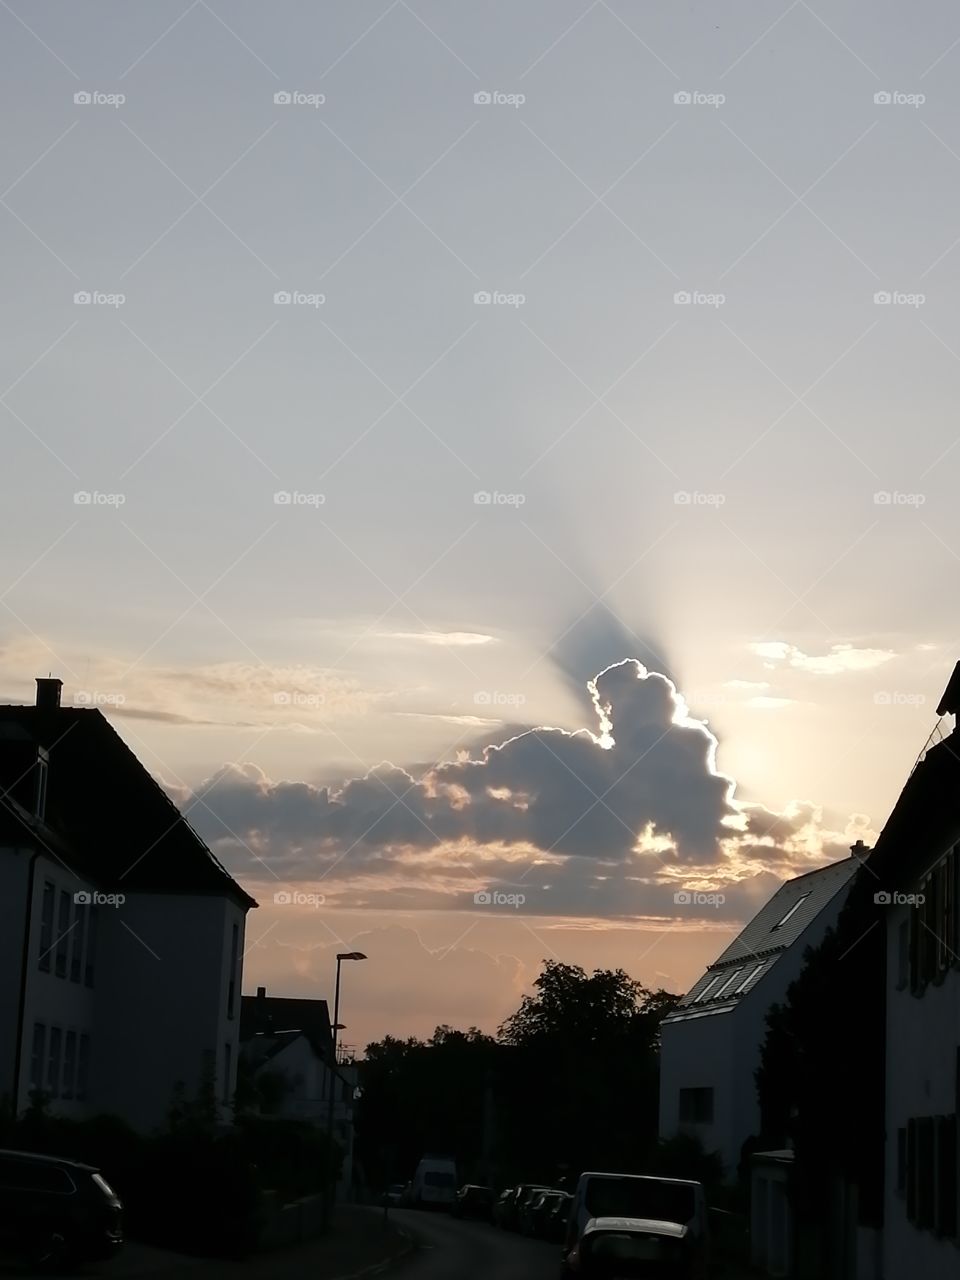 Faszinierender Sonnenaufgang in Ulm